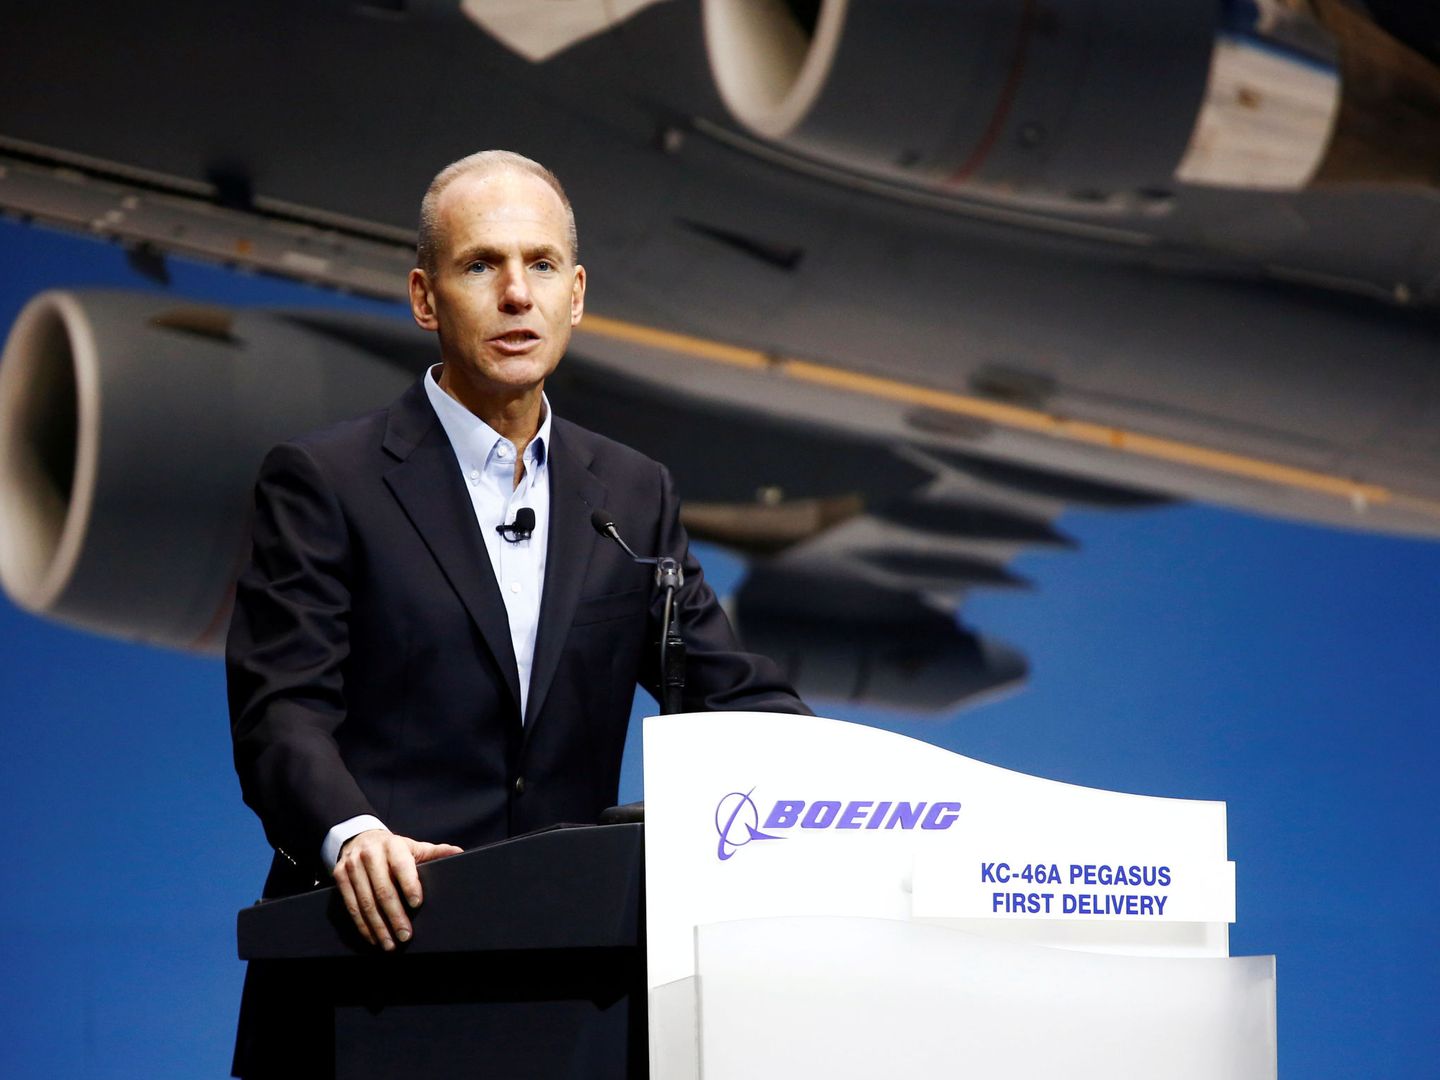 El presidente y CEO de Boeing, Dennis Muilenburg, en una rueda de prensa el pasado 24 de enero. (Reuters)